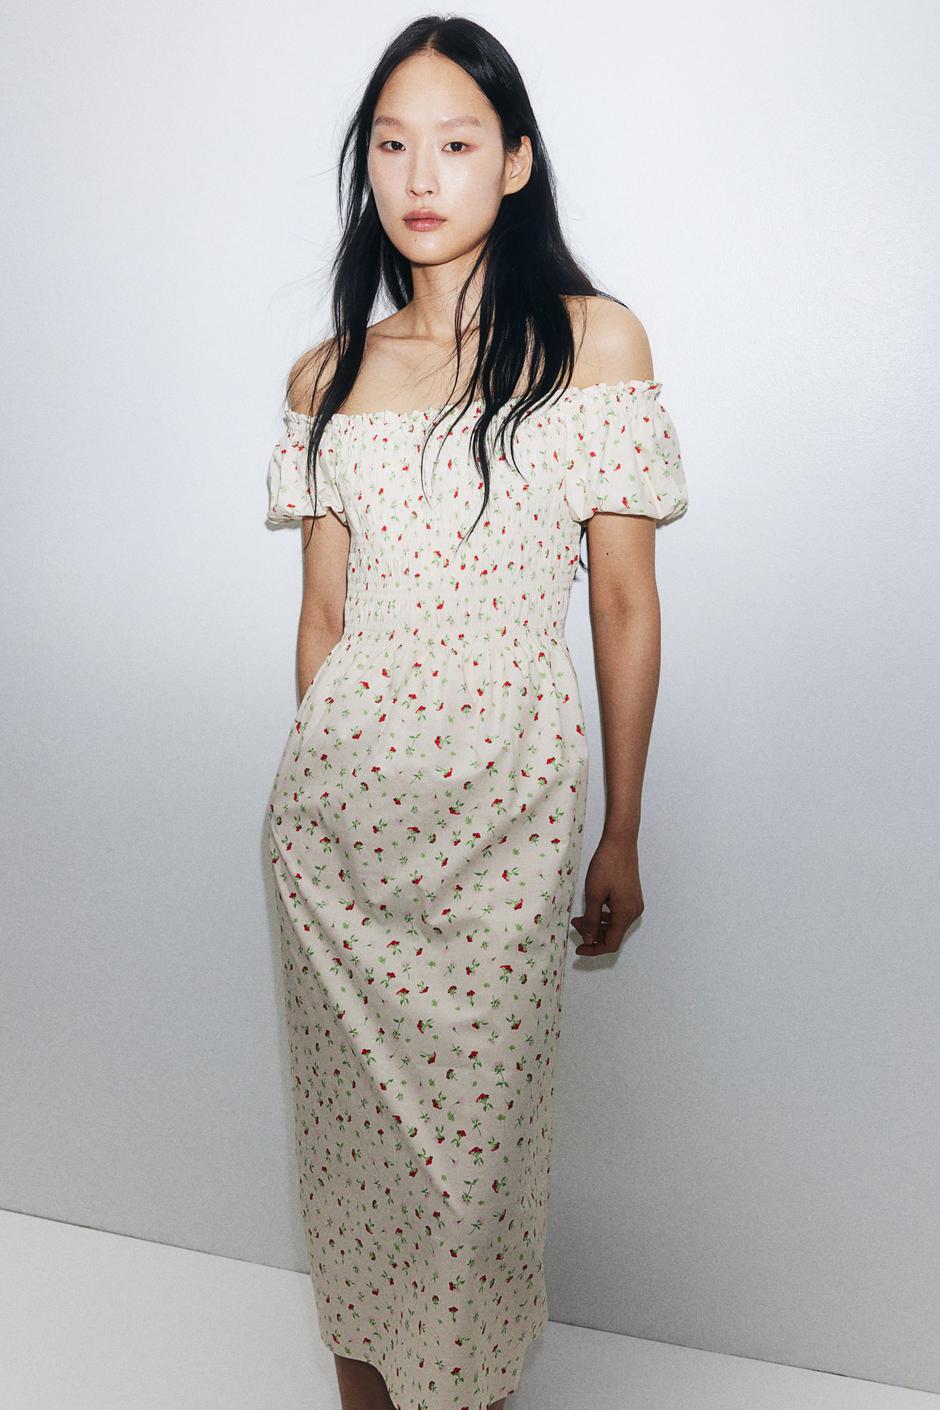 Foto: H&M, duga milkmaid haljina (29,99 eura) | Autor: 